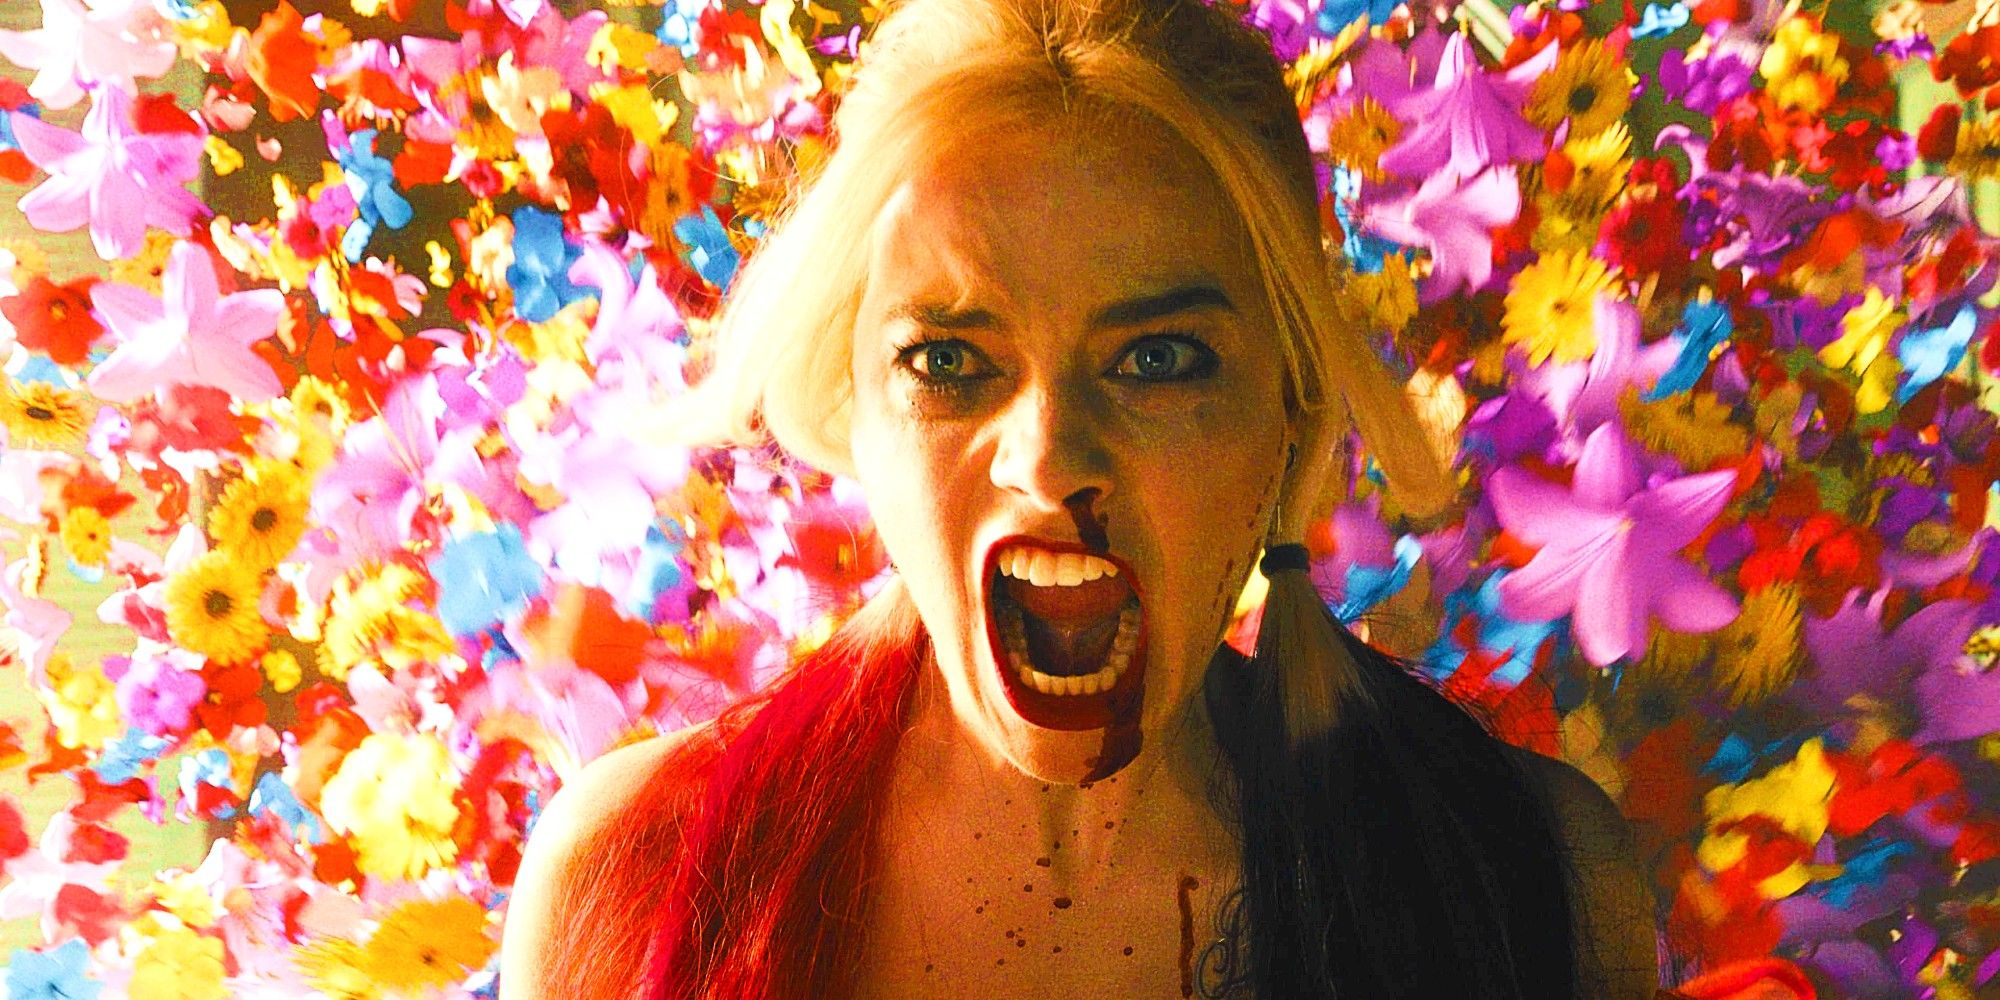 El futuro del Universo DC de Harley Quinn de Margot Robbie está en serias dudas después de la última actualización